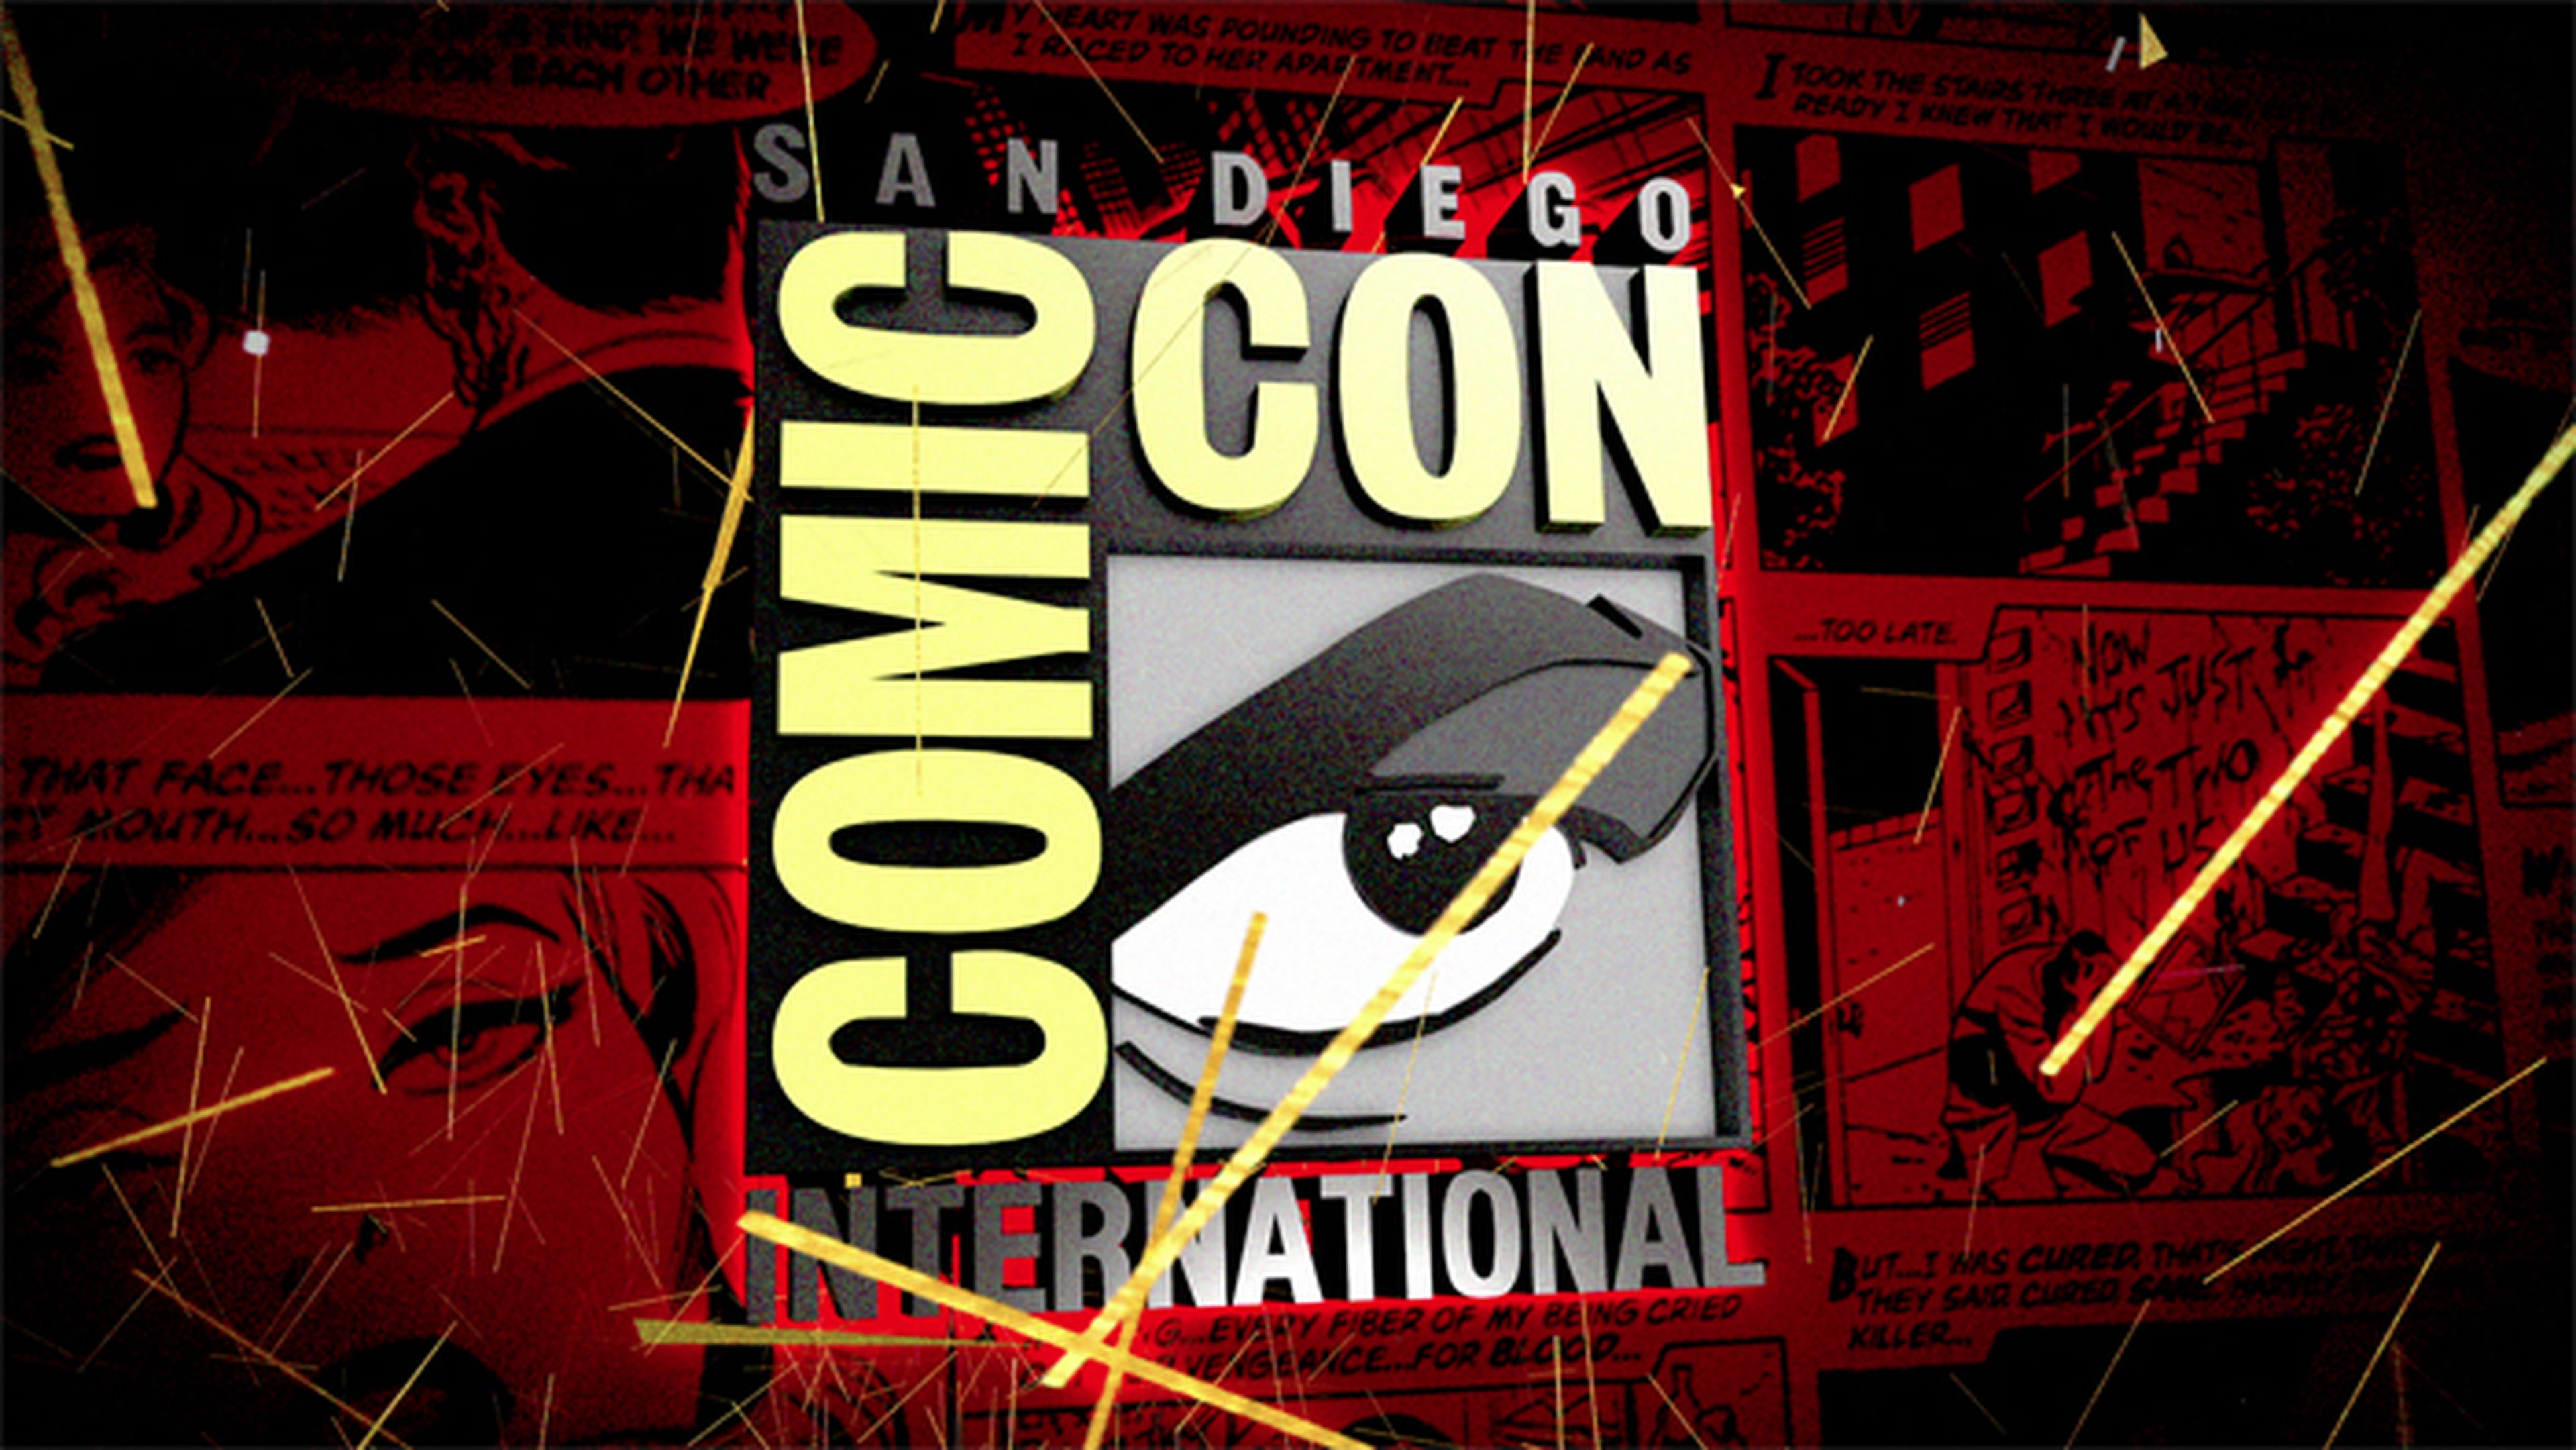 Comienza la San Diego Comic Con 2013